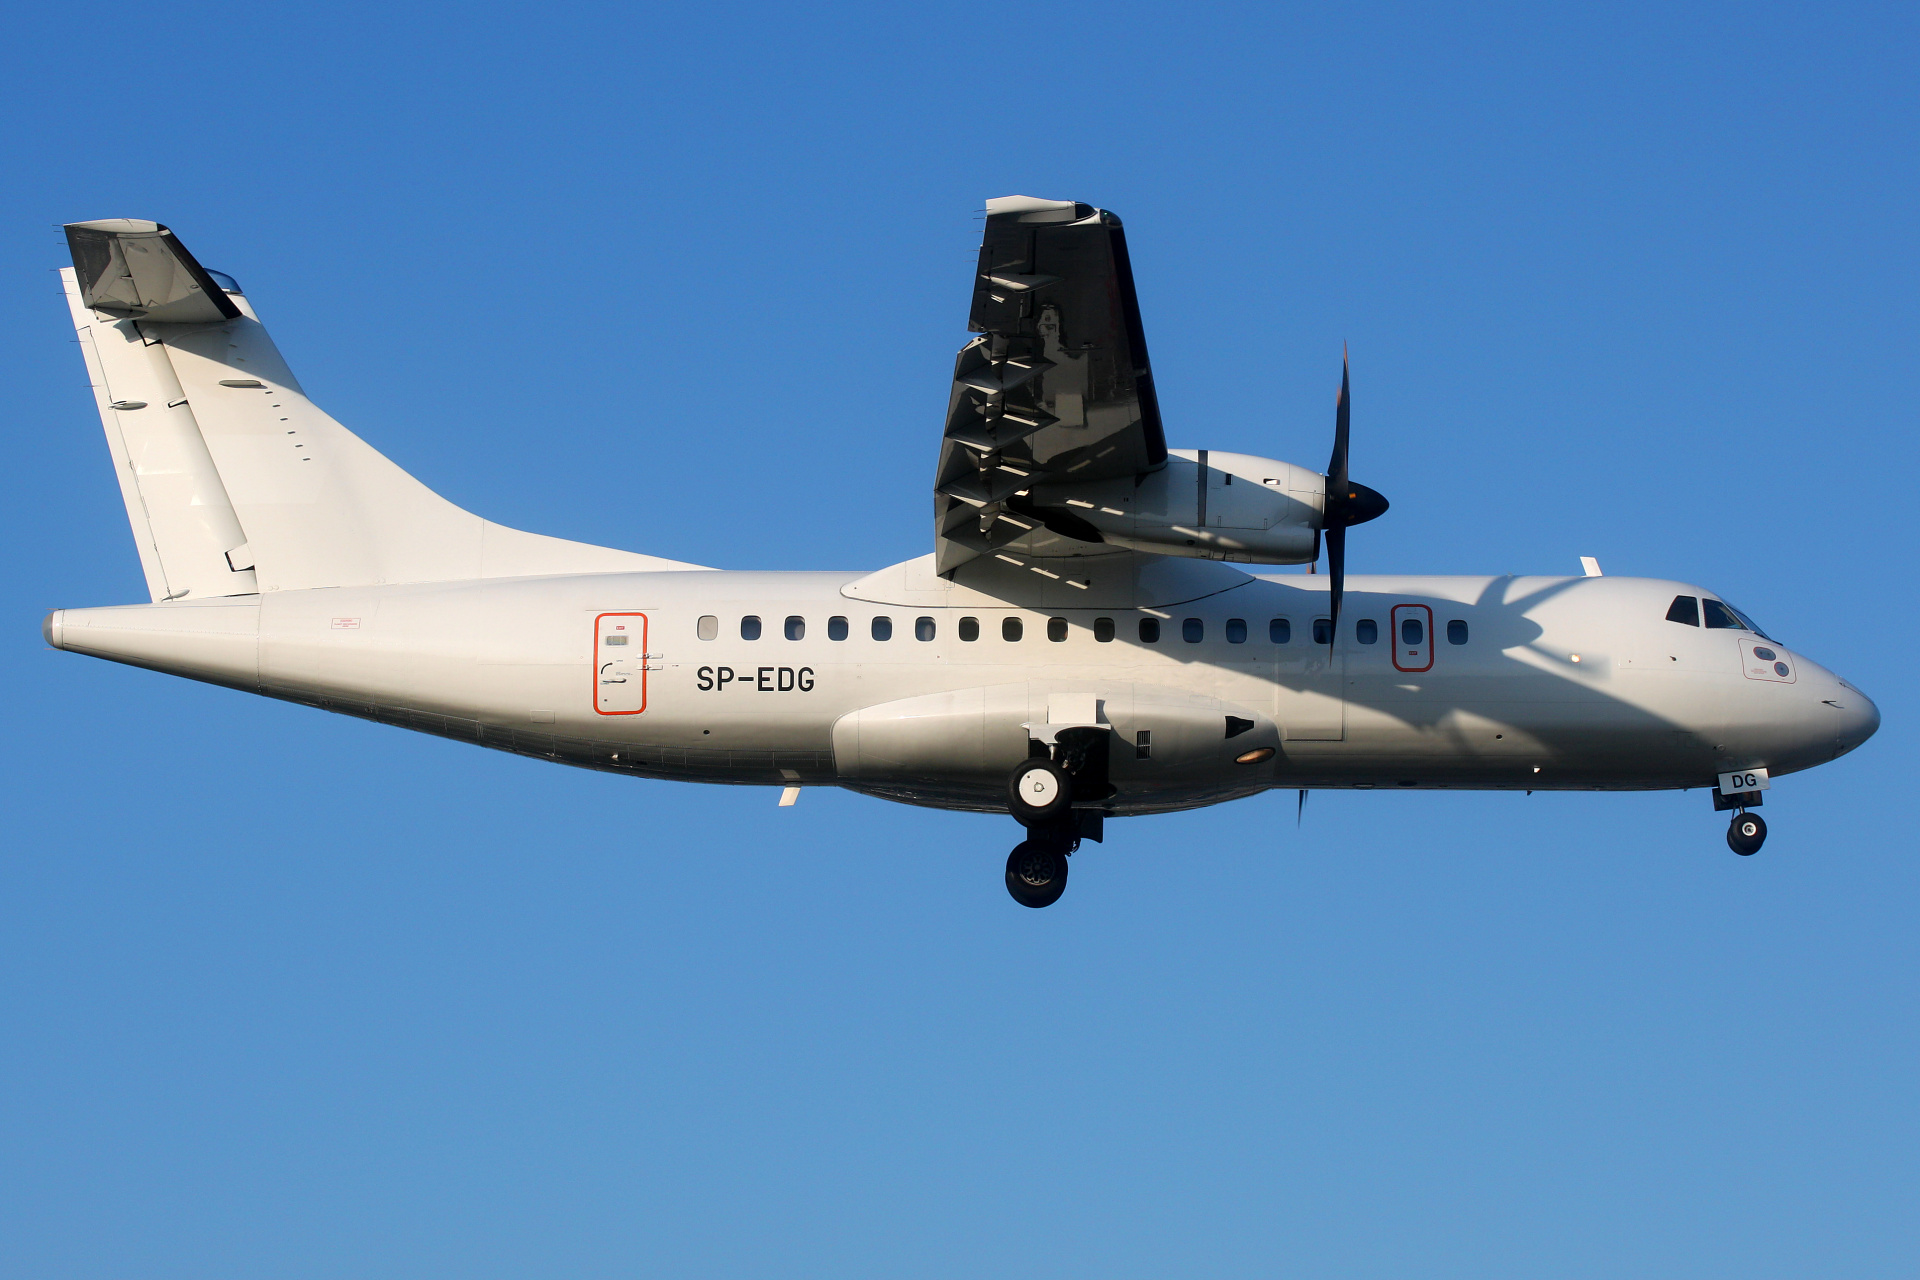 SP-EDG (Aircraft » EPWA Spotting » ATR 42 » EuroLOT)